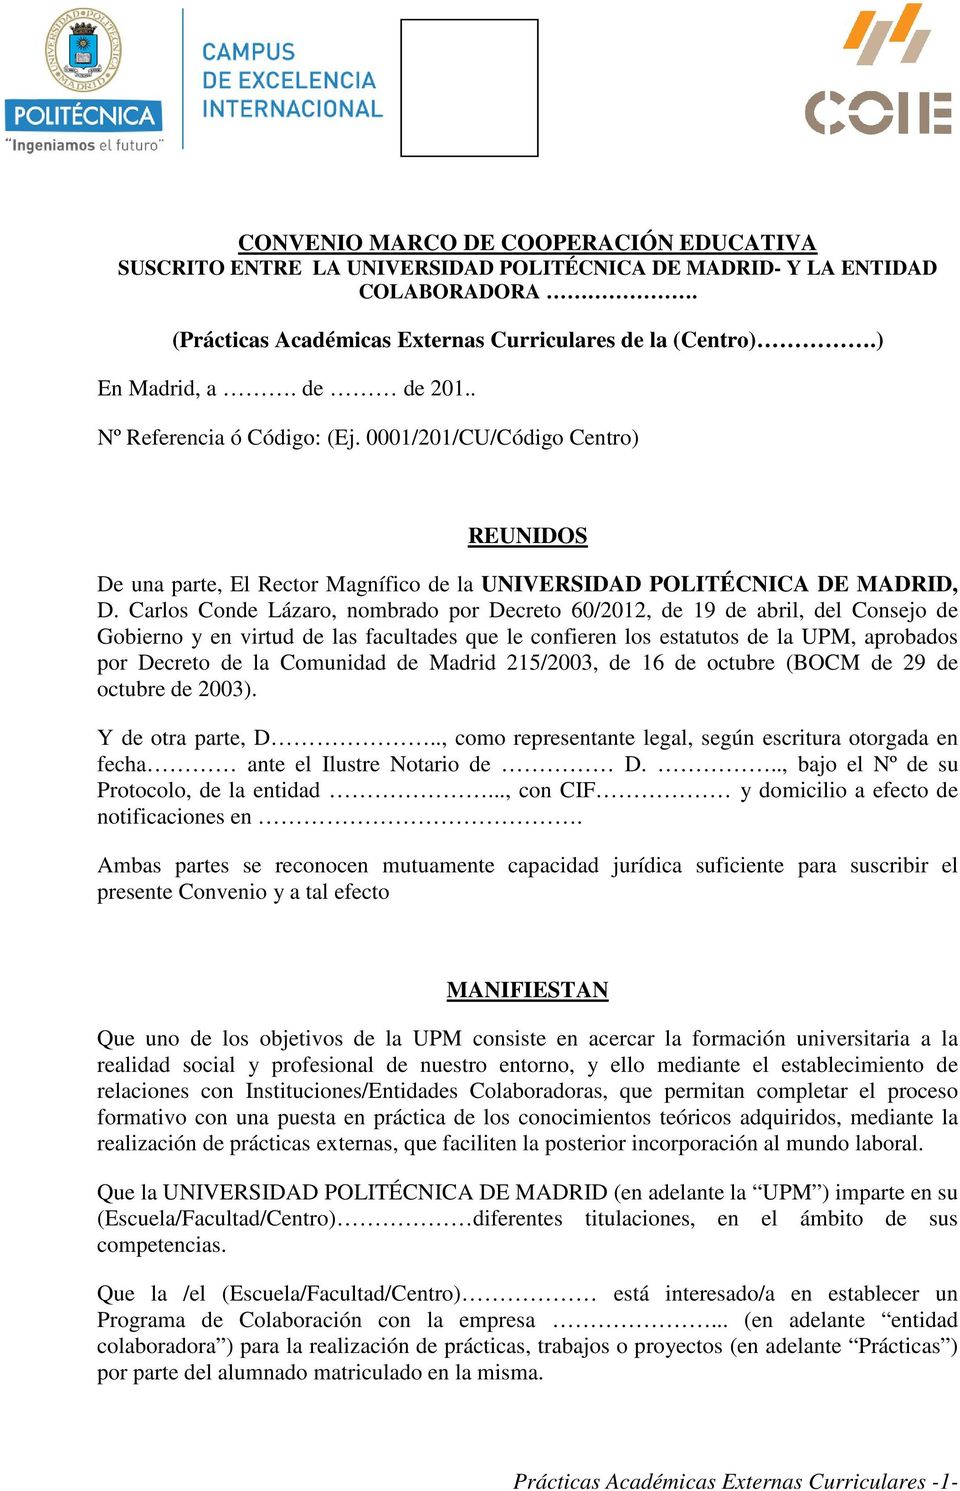 Carlos Conde Lázaro, nombrado por Decreto 60/2012, de 19 de abril, del Consejo de Gobierno y en virtud de las facultades que le confieren los estatutos de la UPM, aprobados por Decreto de la